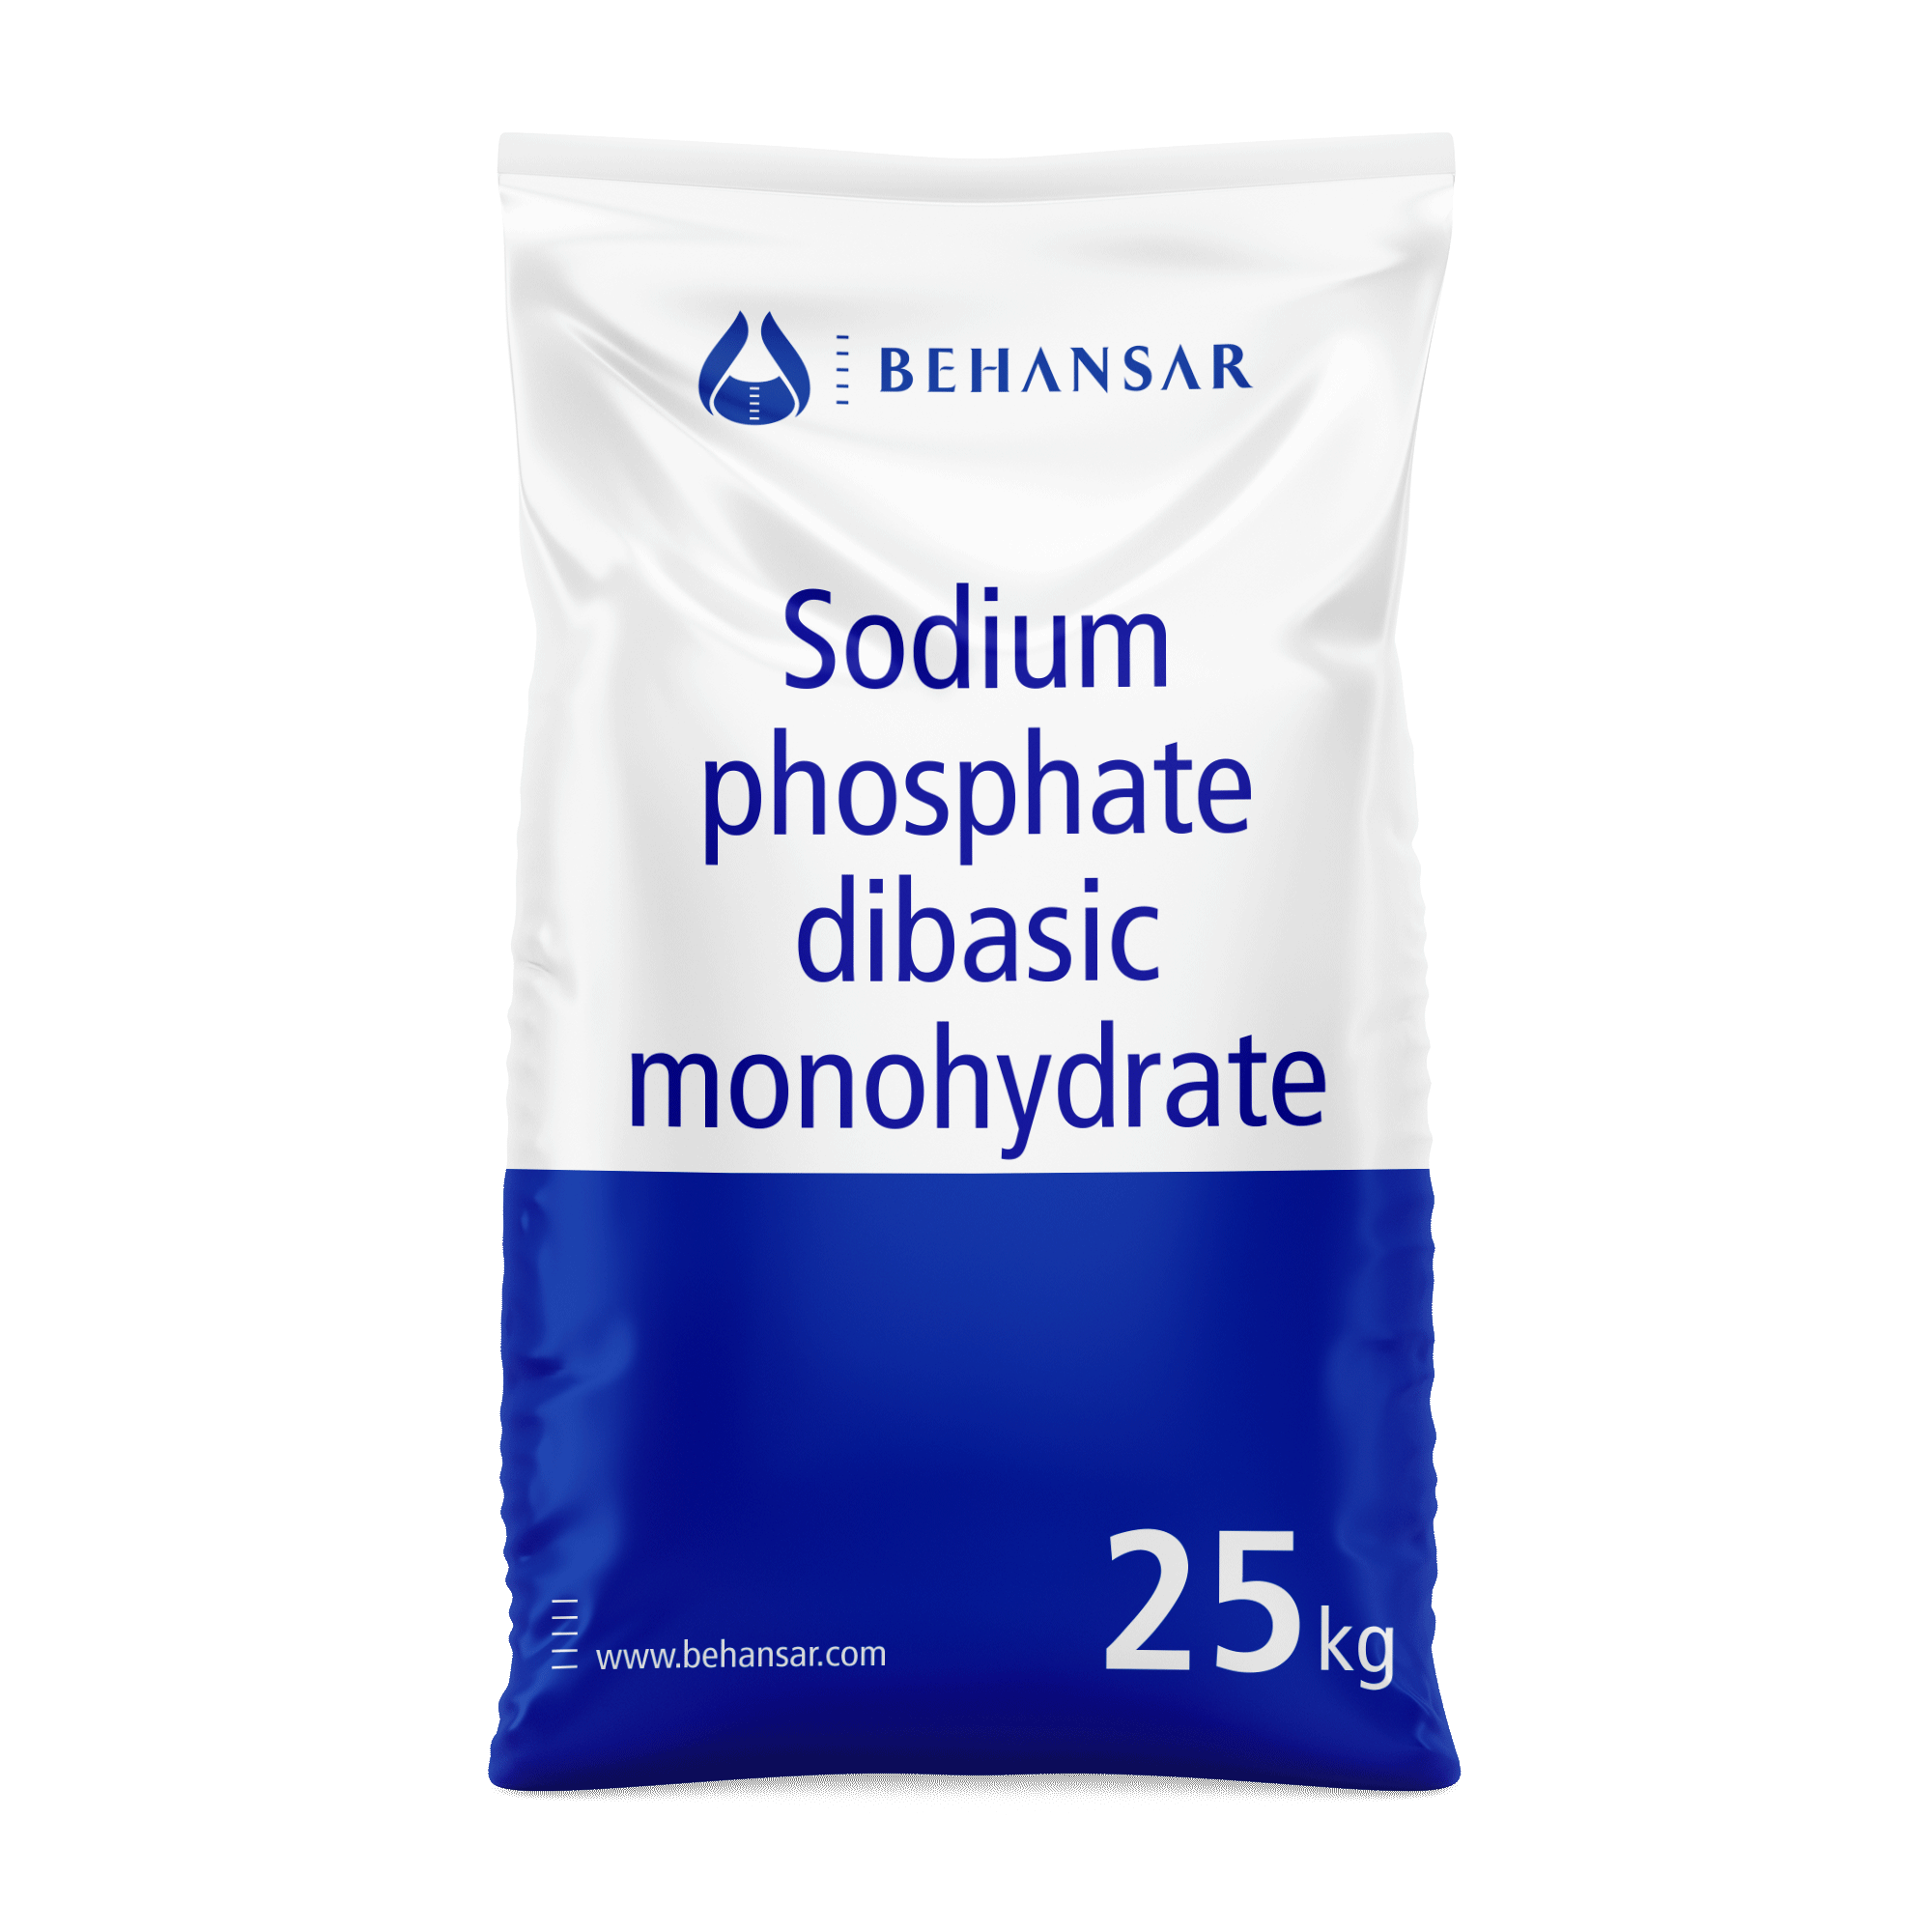 دی بازیک سدیم فسفات مونو هیدرات یکی از تولیدات شرکت بهانسار است